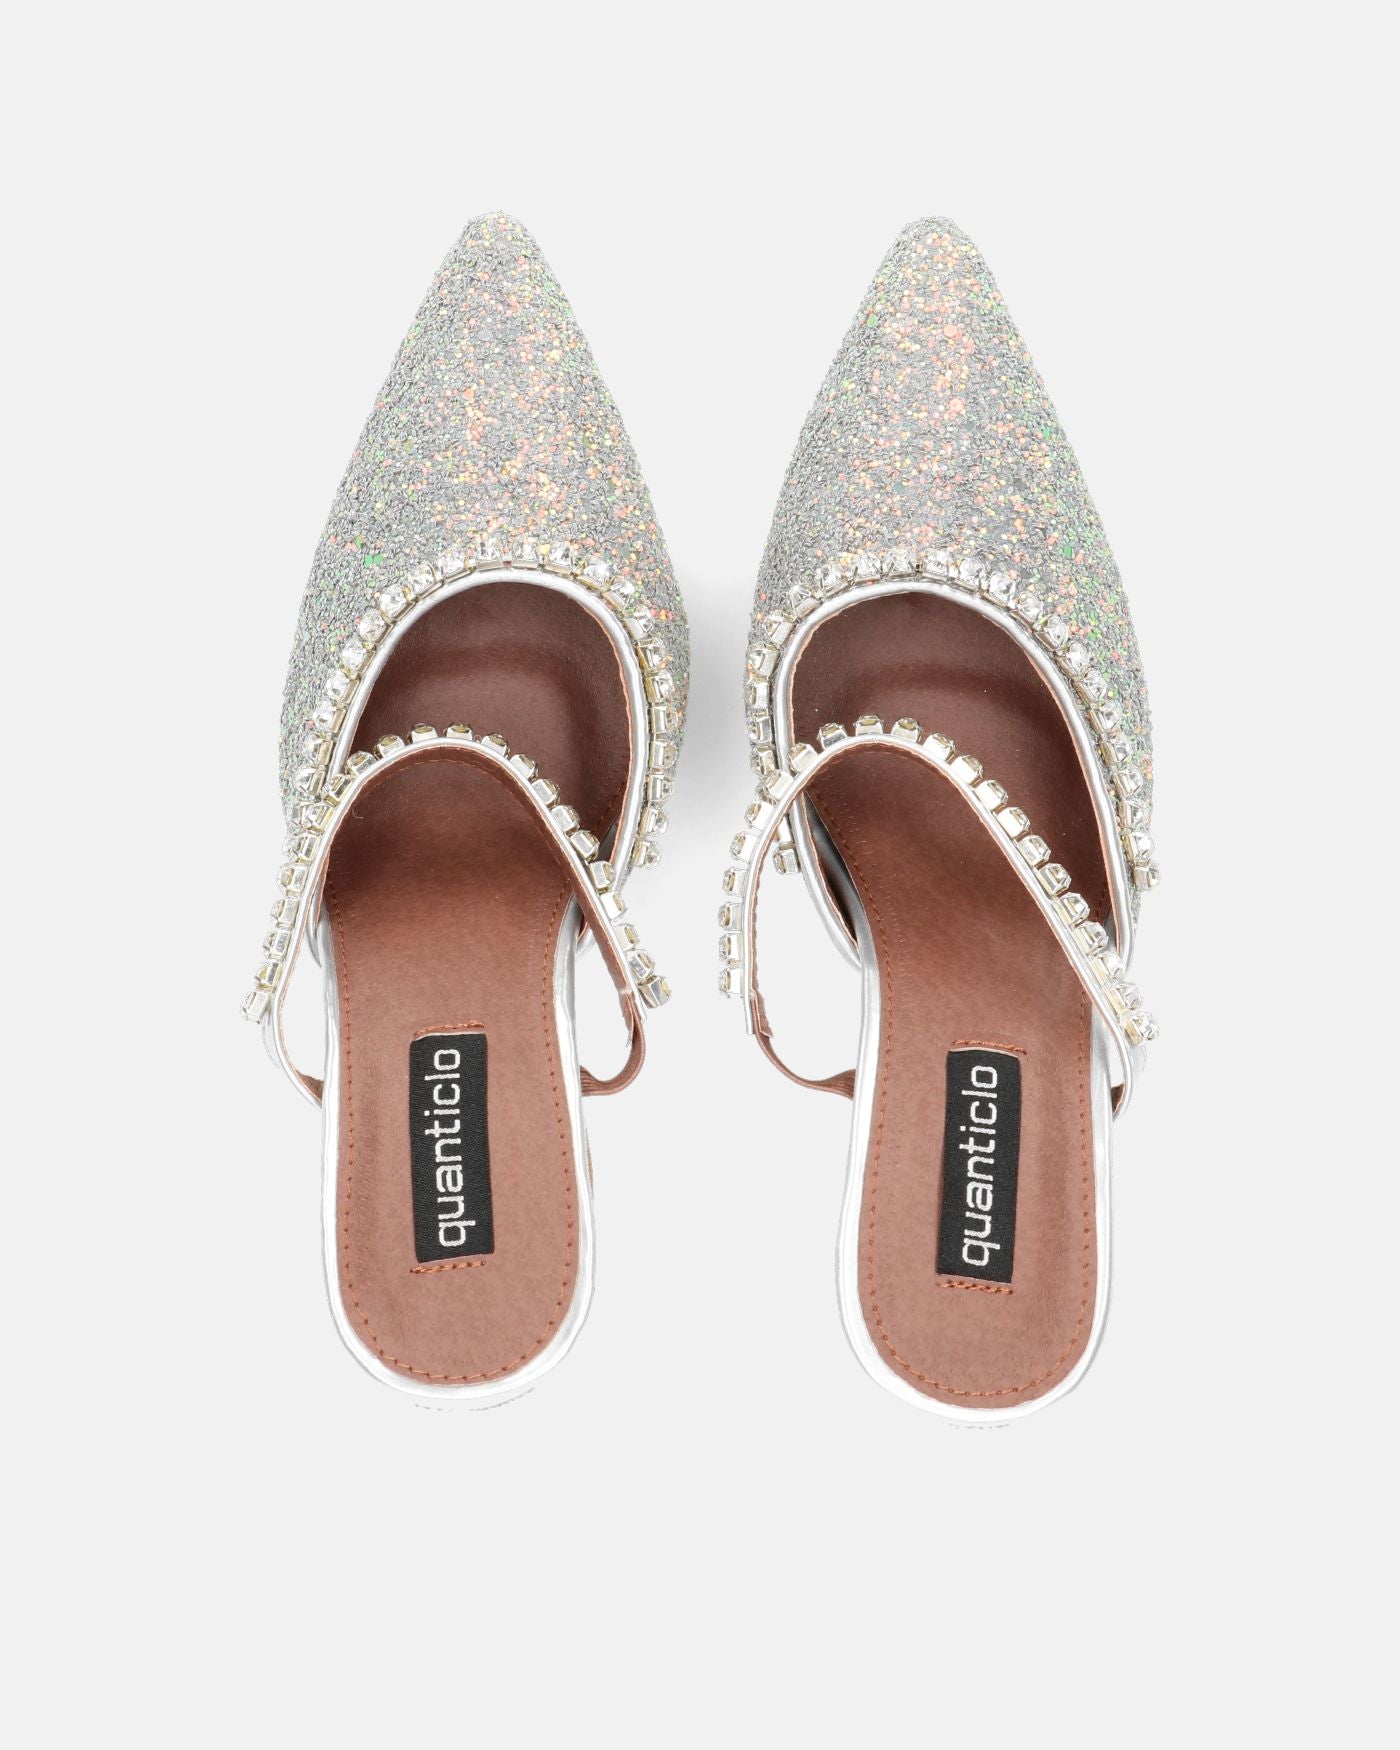 PERAL - scarpa con tacco in glitter argento con gemme